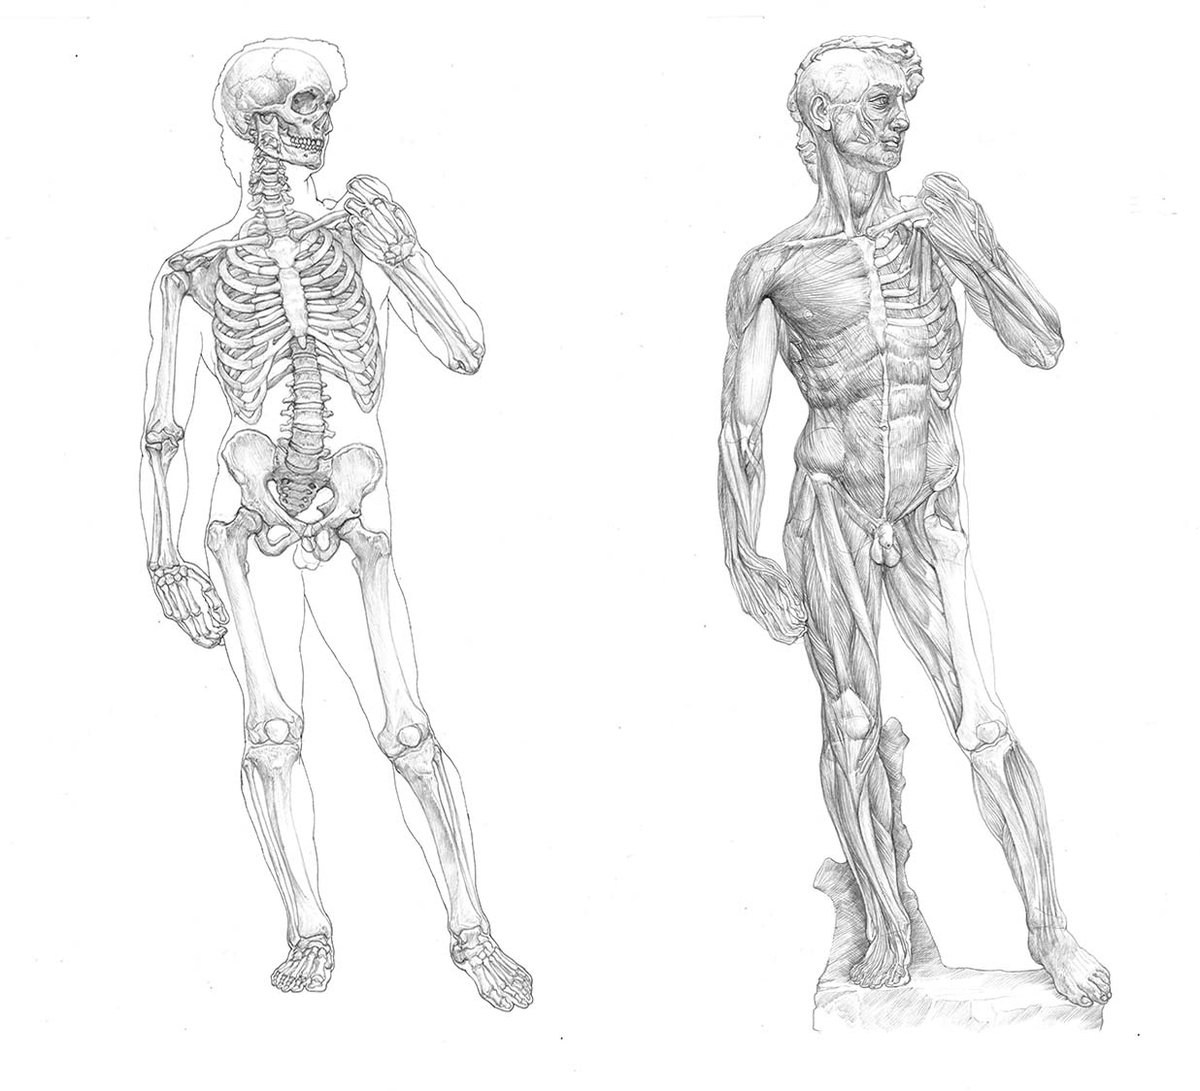 小田 隆 Oda Takashi ダビデ像の骨格図と筋肉図 現時点で納得のできる完成度のものができた 骨格図をペン画で仕上げるかどうか迷うところ T Co 285ggixhse Twitter